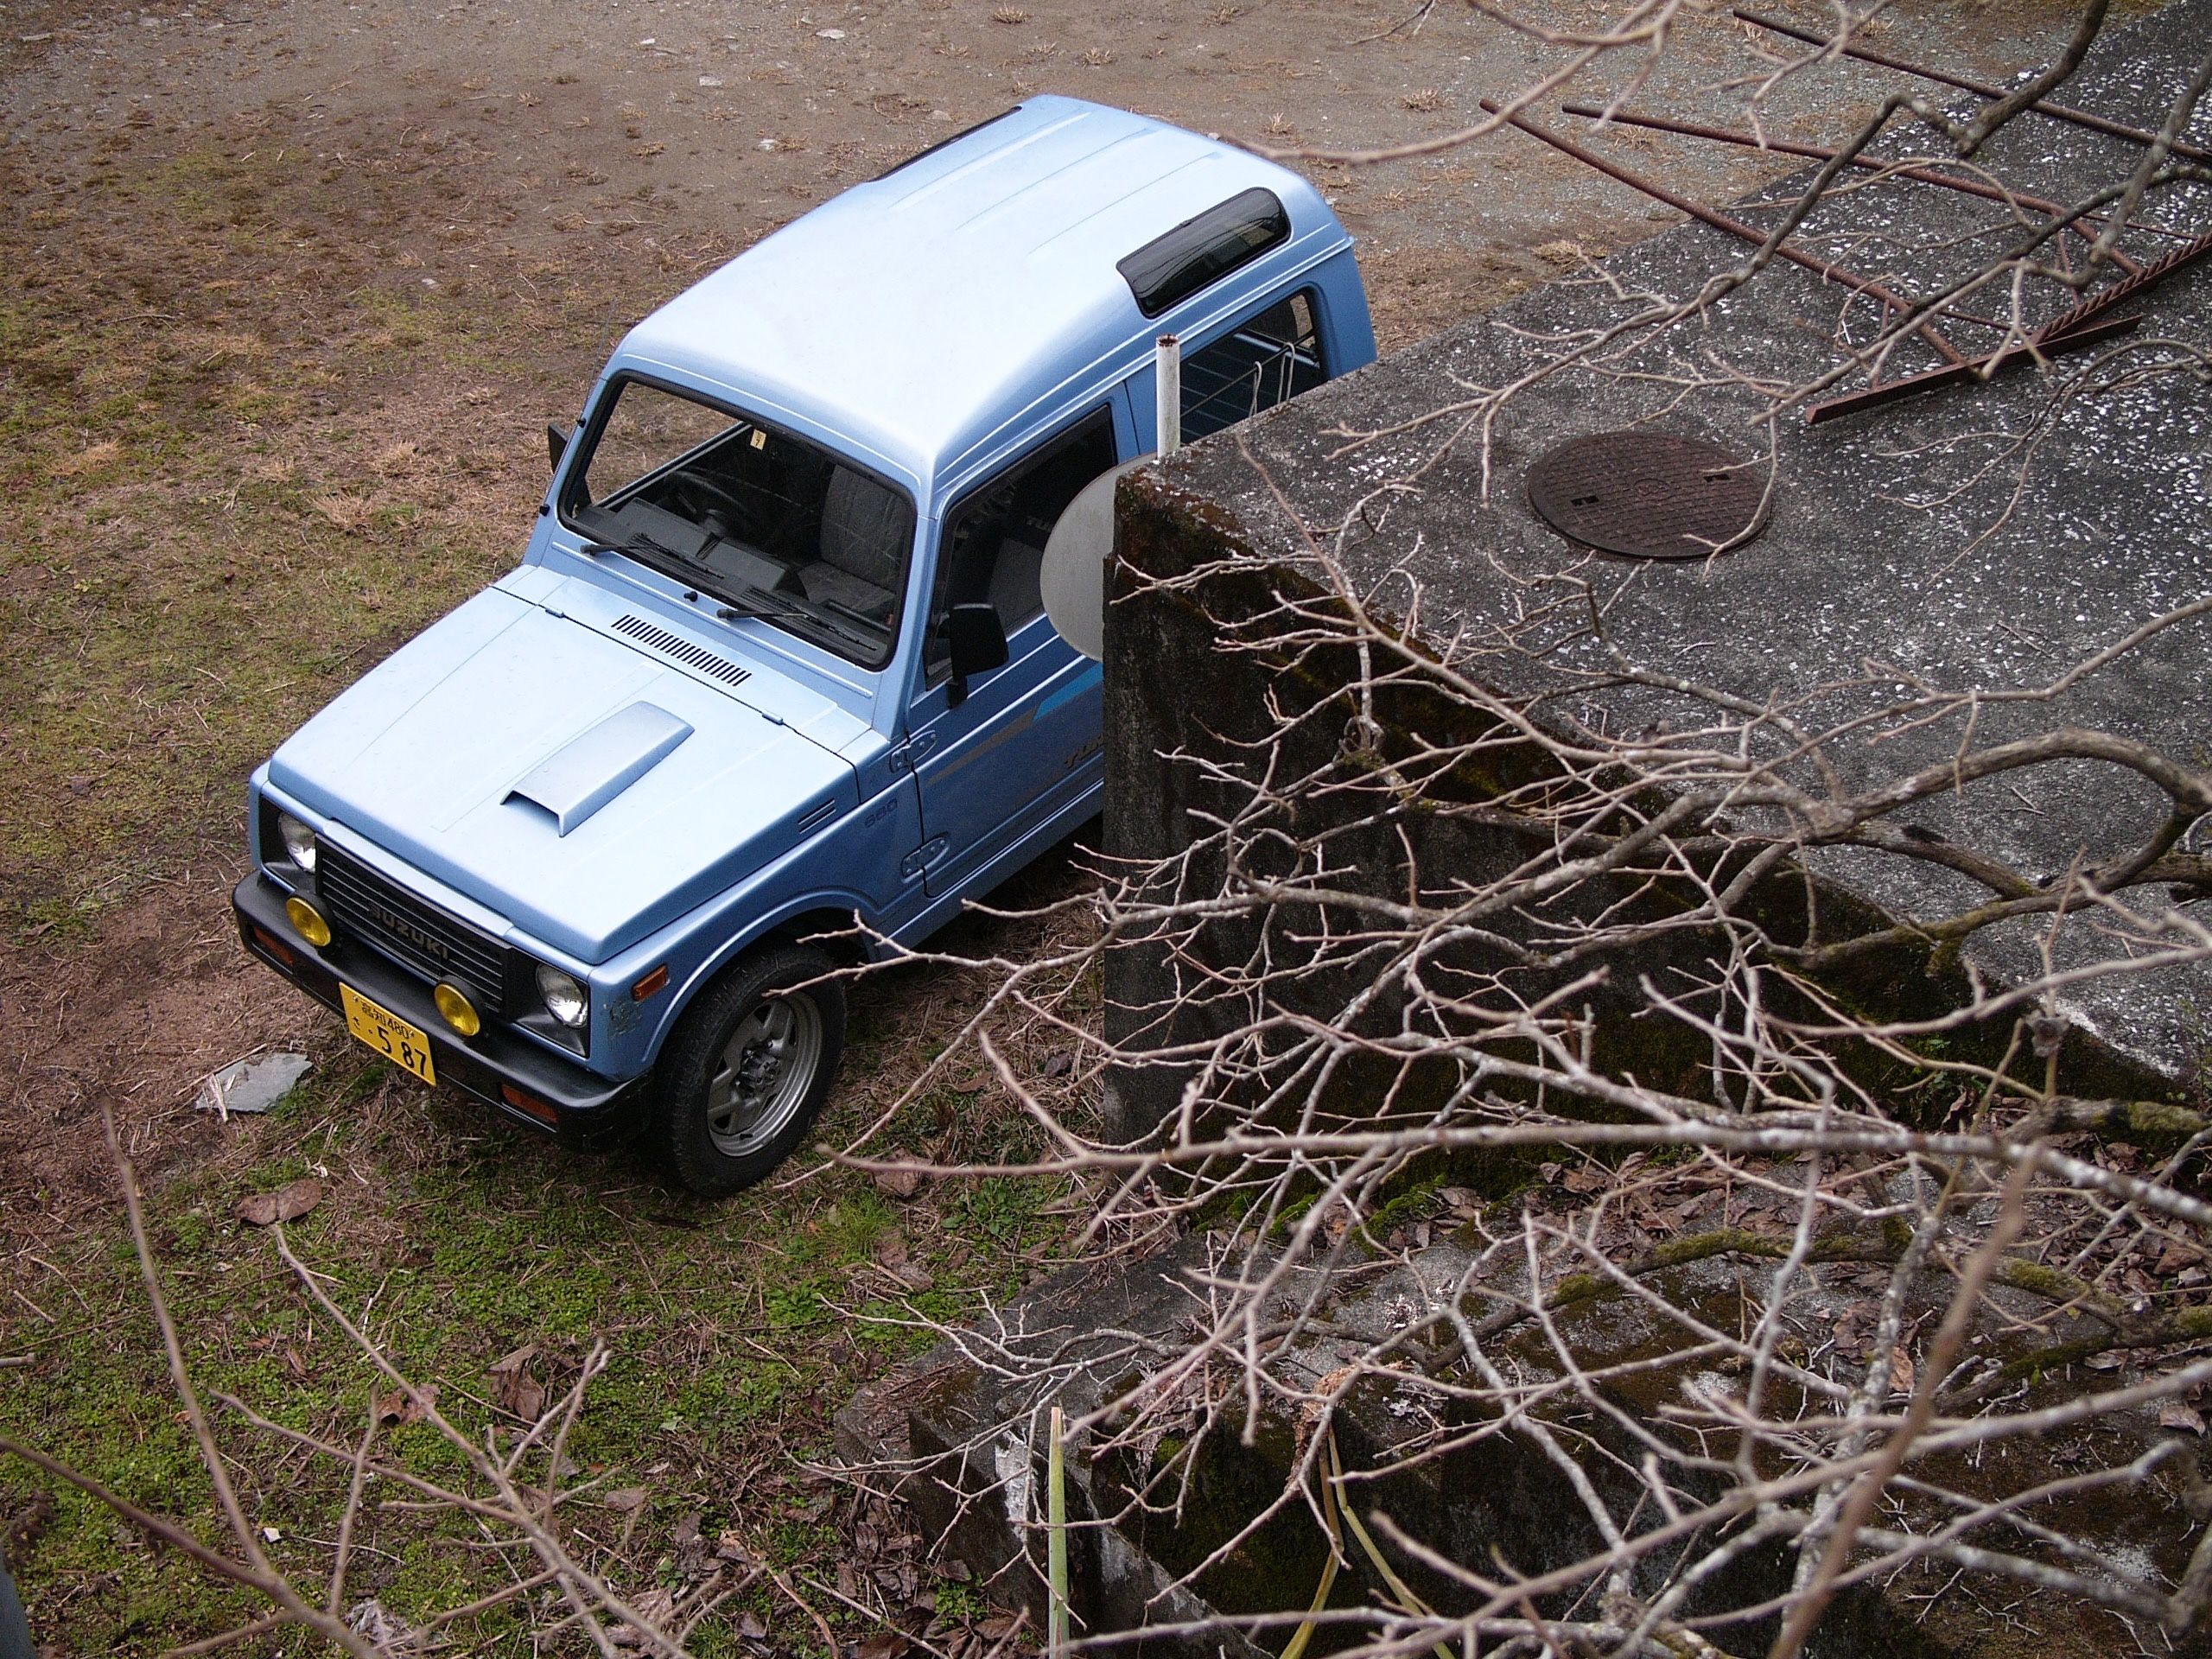 Looking down on an old blue Suzuki Samurai micro-jeep.